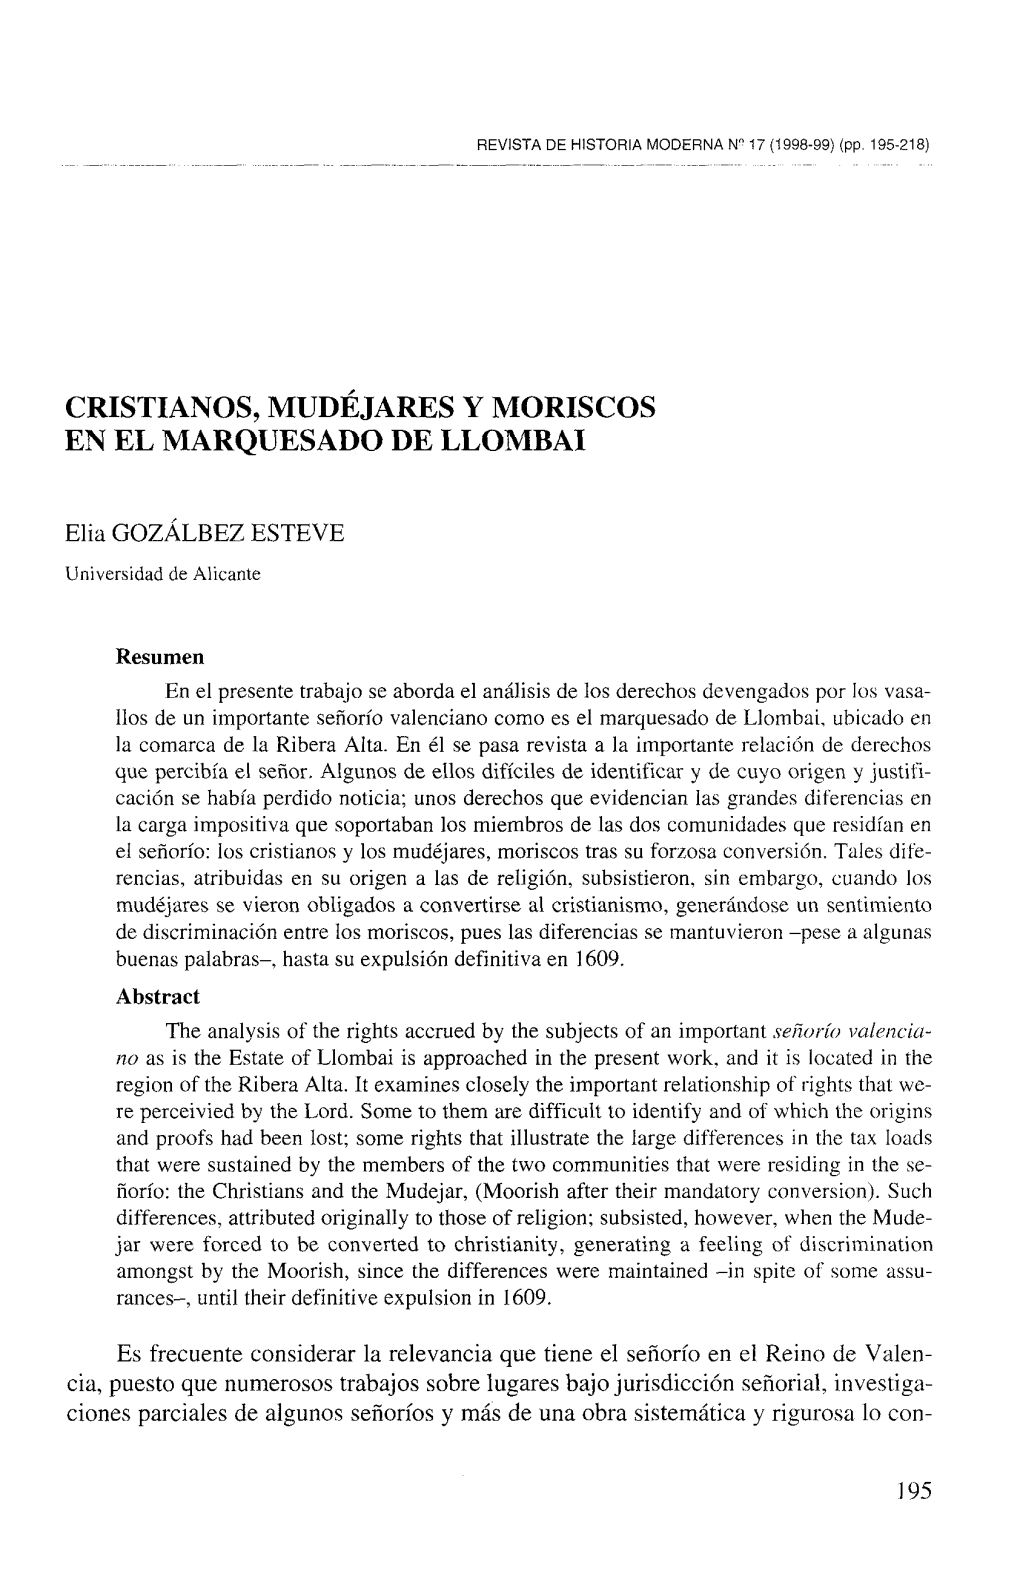 Cristianos, Mudejares Y Moriscos En El Marquesado De Llombai